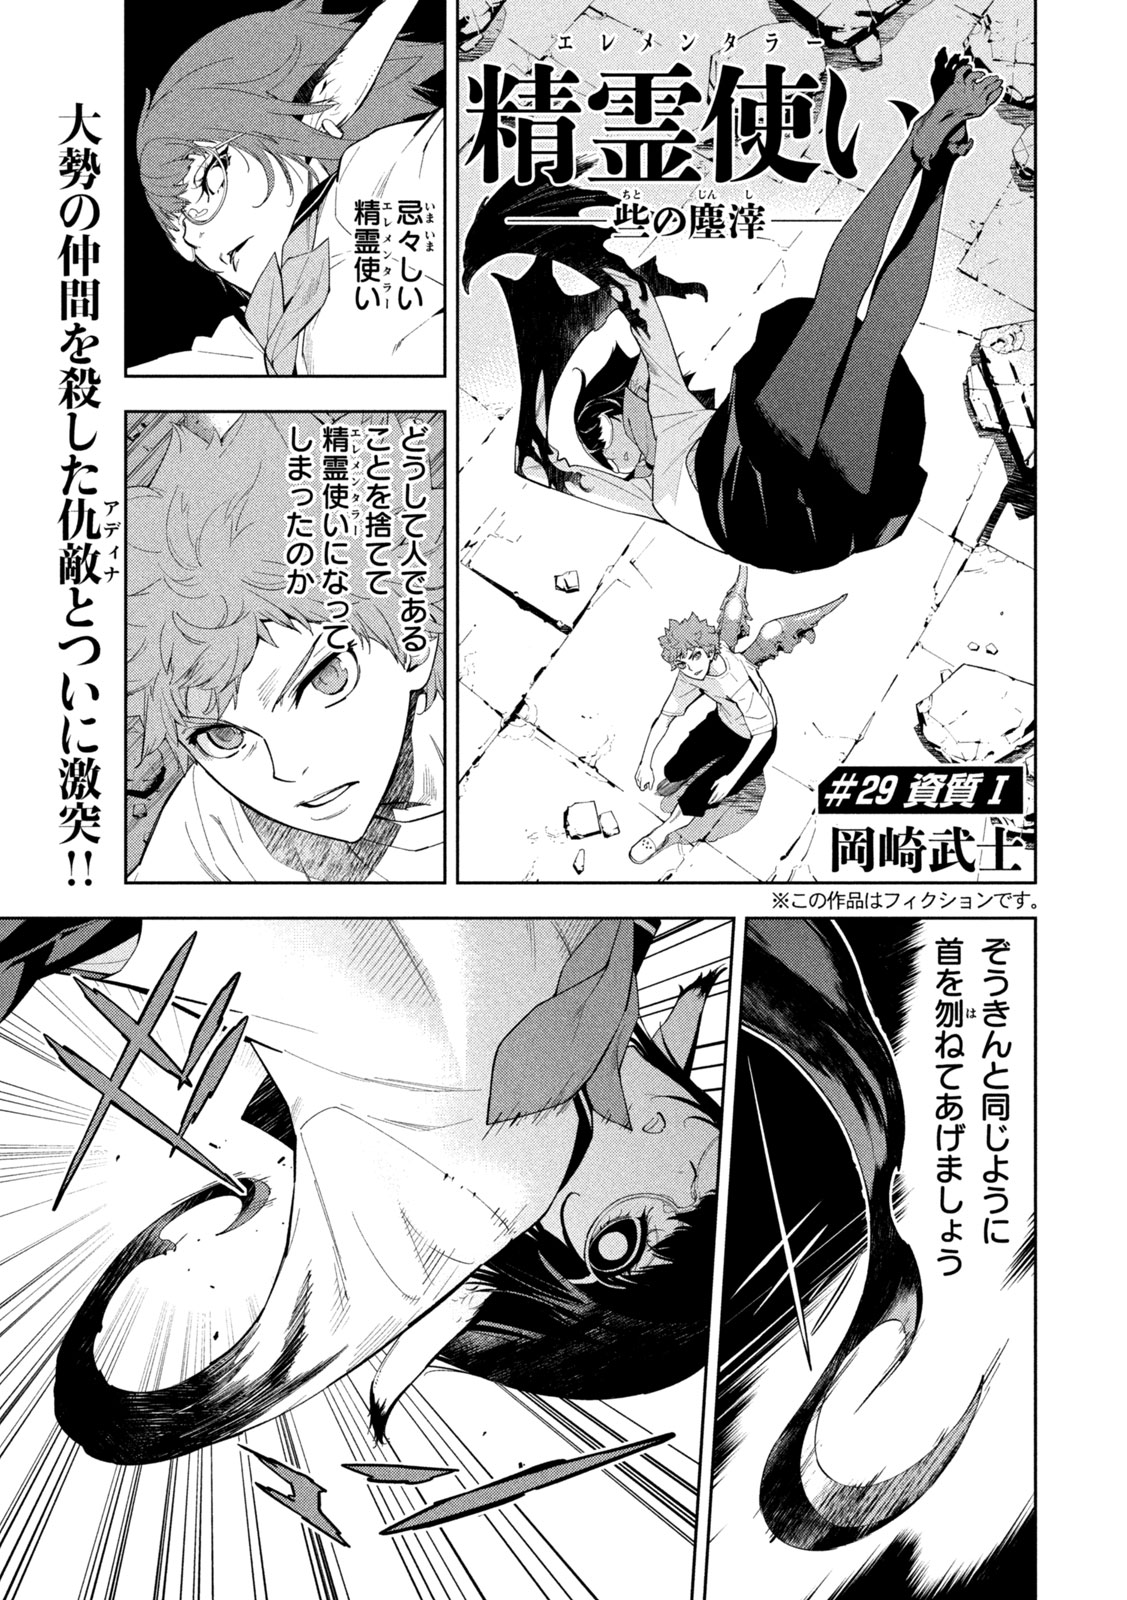 Seirei Tsukai – Chito no Jinshi - Chapter 29 - Page 1